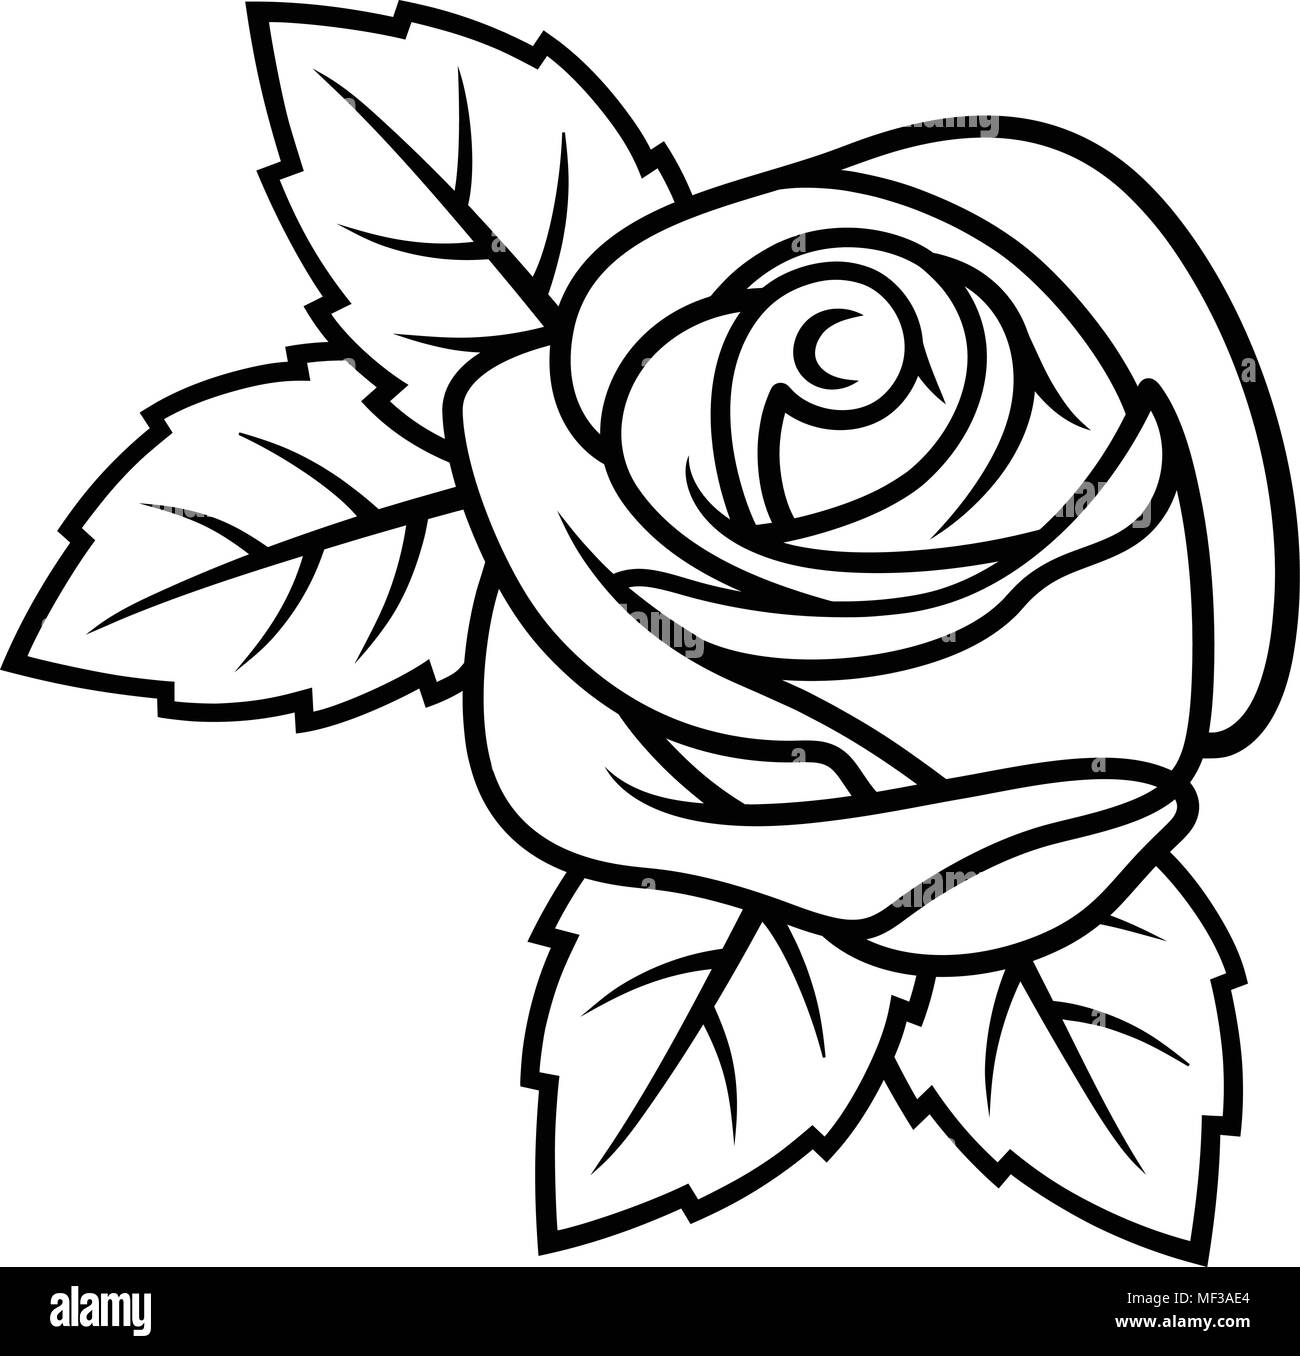 Schizzo di Rose isolati su sfondo bianco. Utilizzare per il disegno di tessuto, tatuaggi, disegno e decorazione di biglietti di auguri e inviti Illustrazione Vettoriale